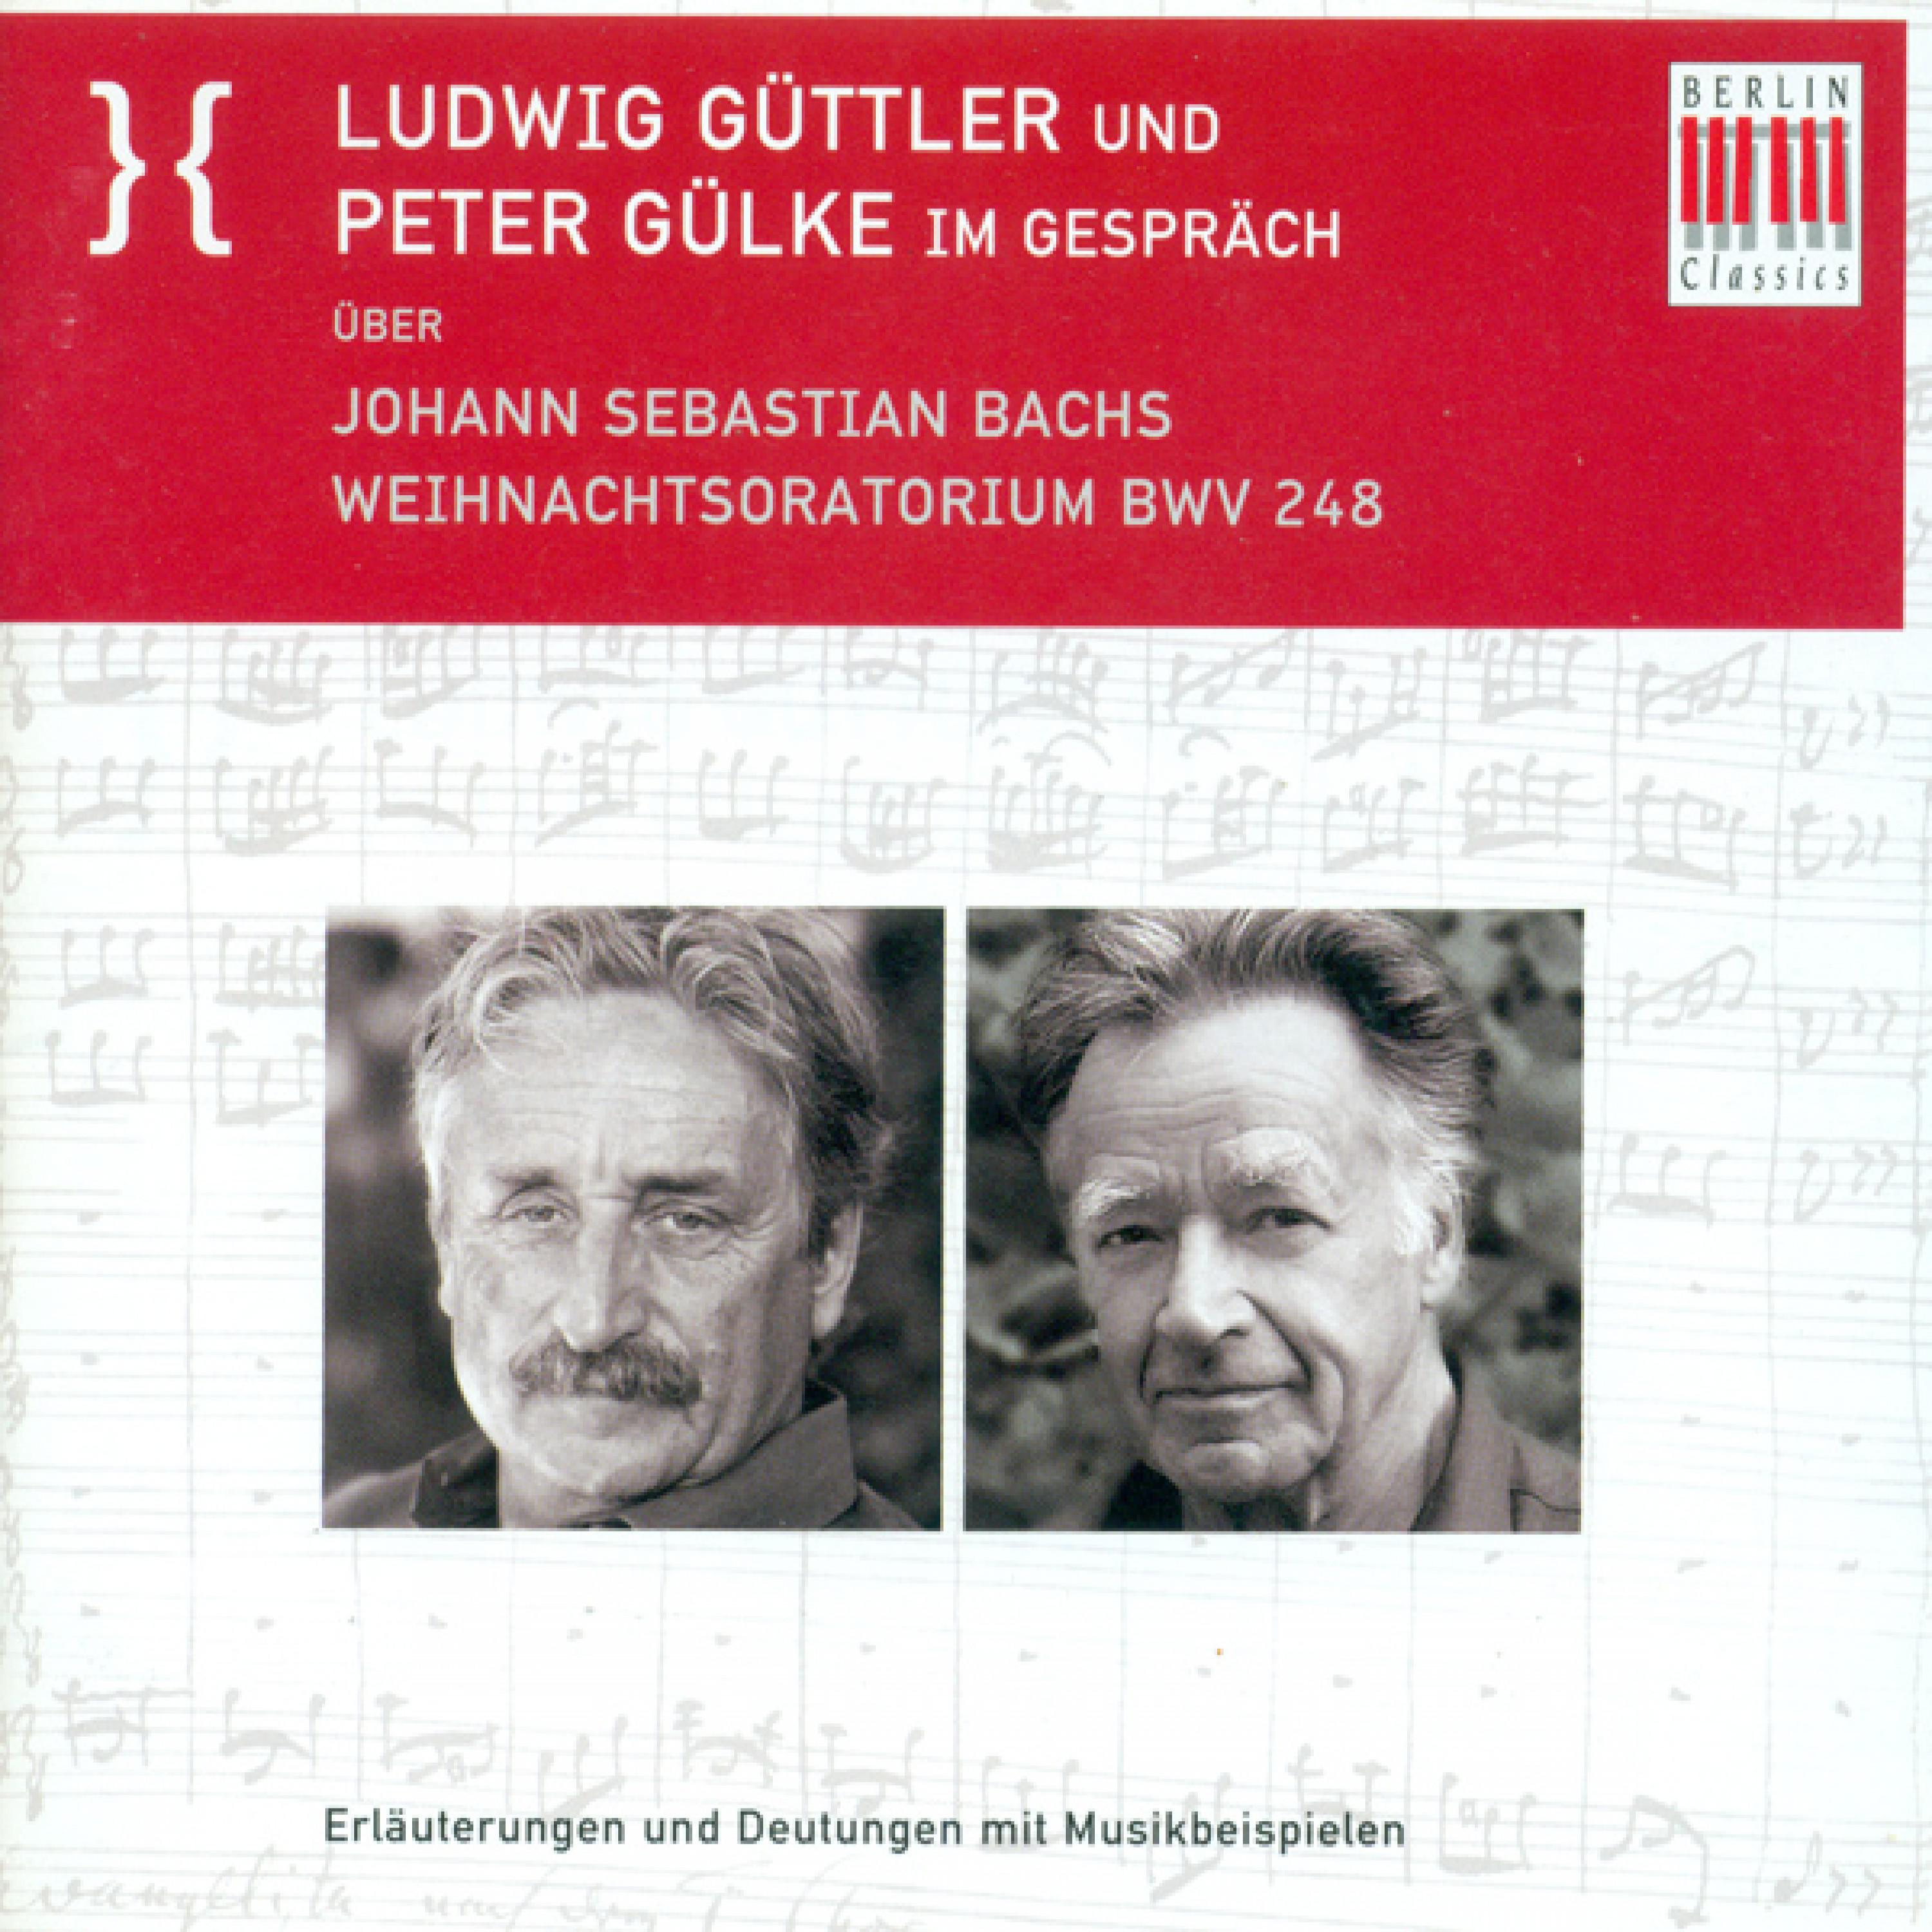 Ludwig Guttler und Peter Gulke Im Gesprach uber Johann Sebastian Bach's Weihnachtsoratorium BWV 248: Kontrafakturen - der geistlich - weltliche Zusammenhang